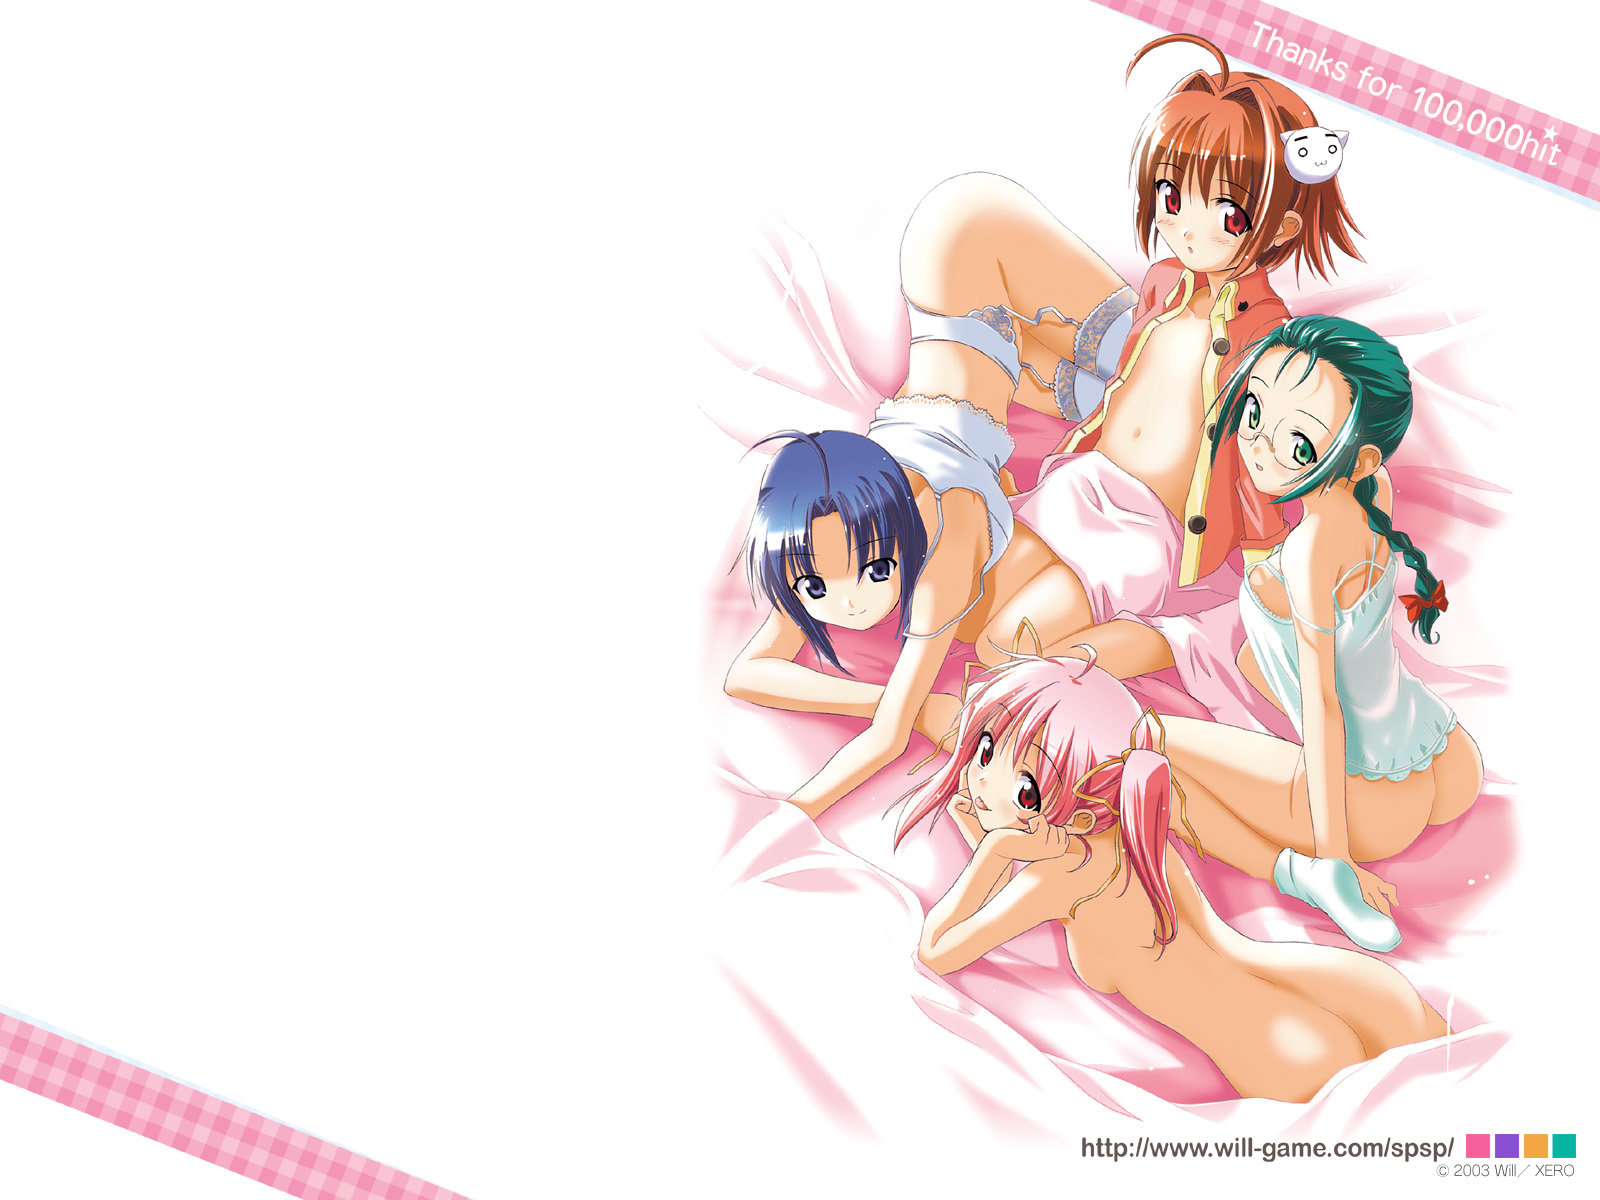 Download full size Anonono wallpaper / Anime / 1600x1200